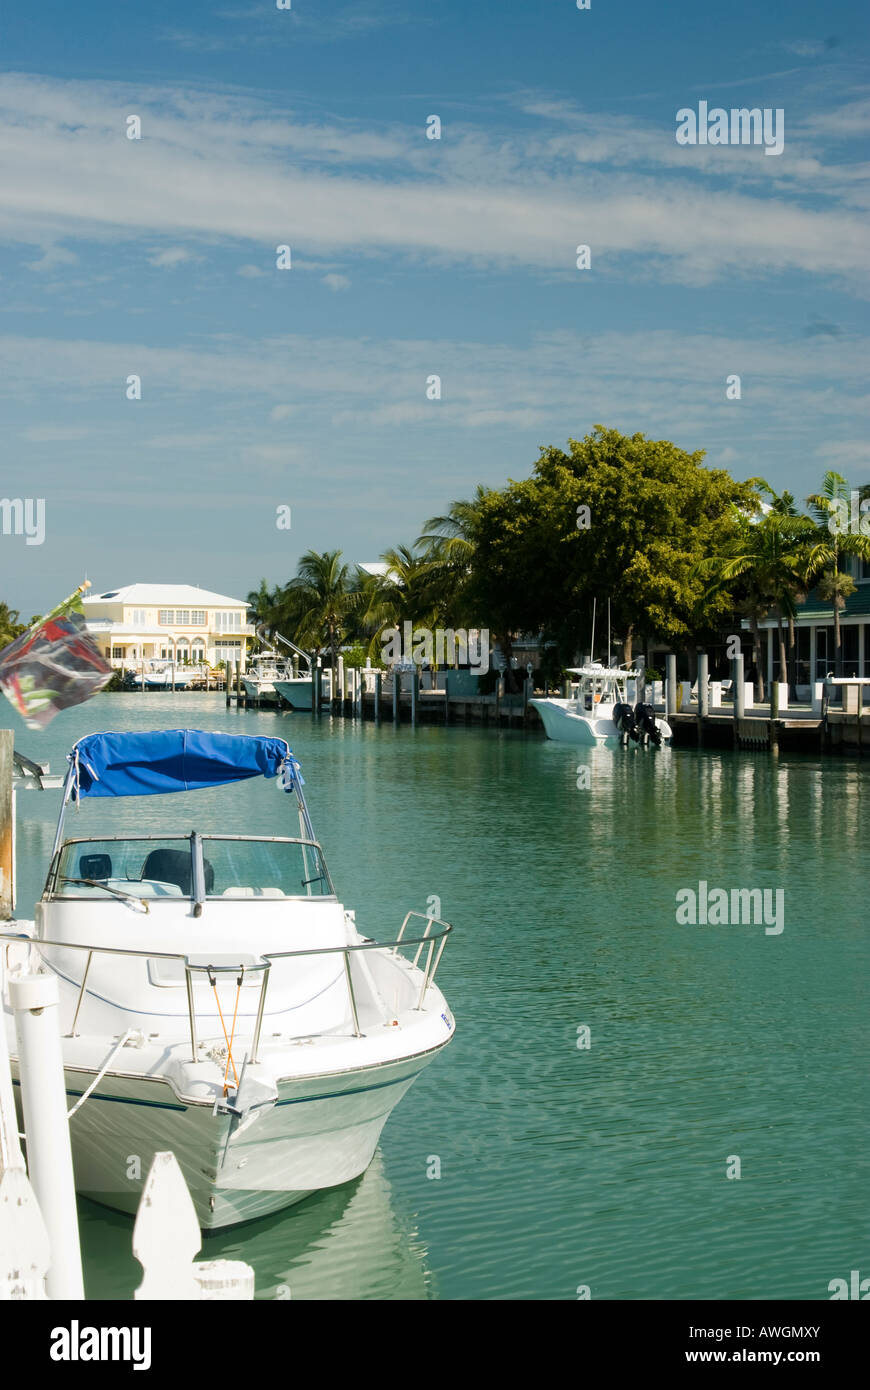 Tipica scena di canale in Florida keys con barche e case Foto Stock